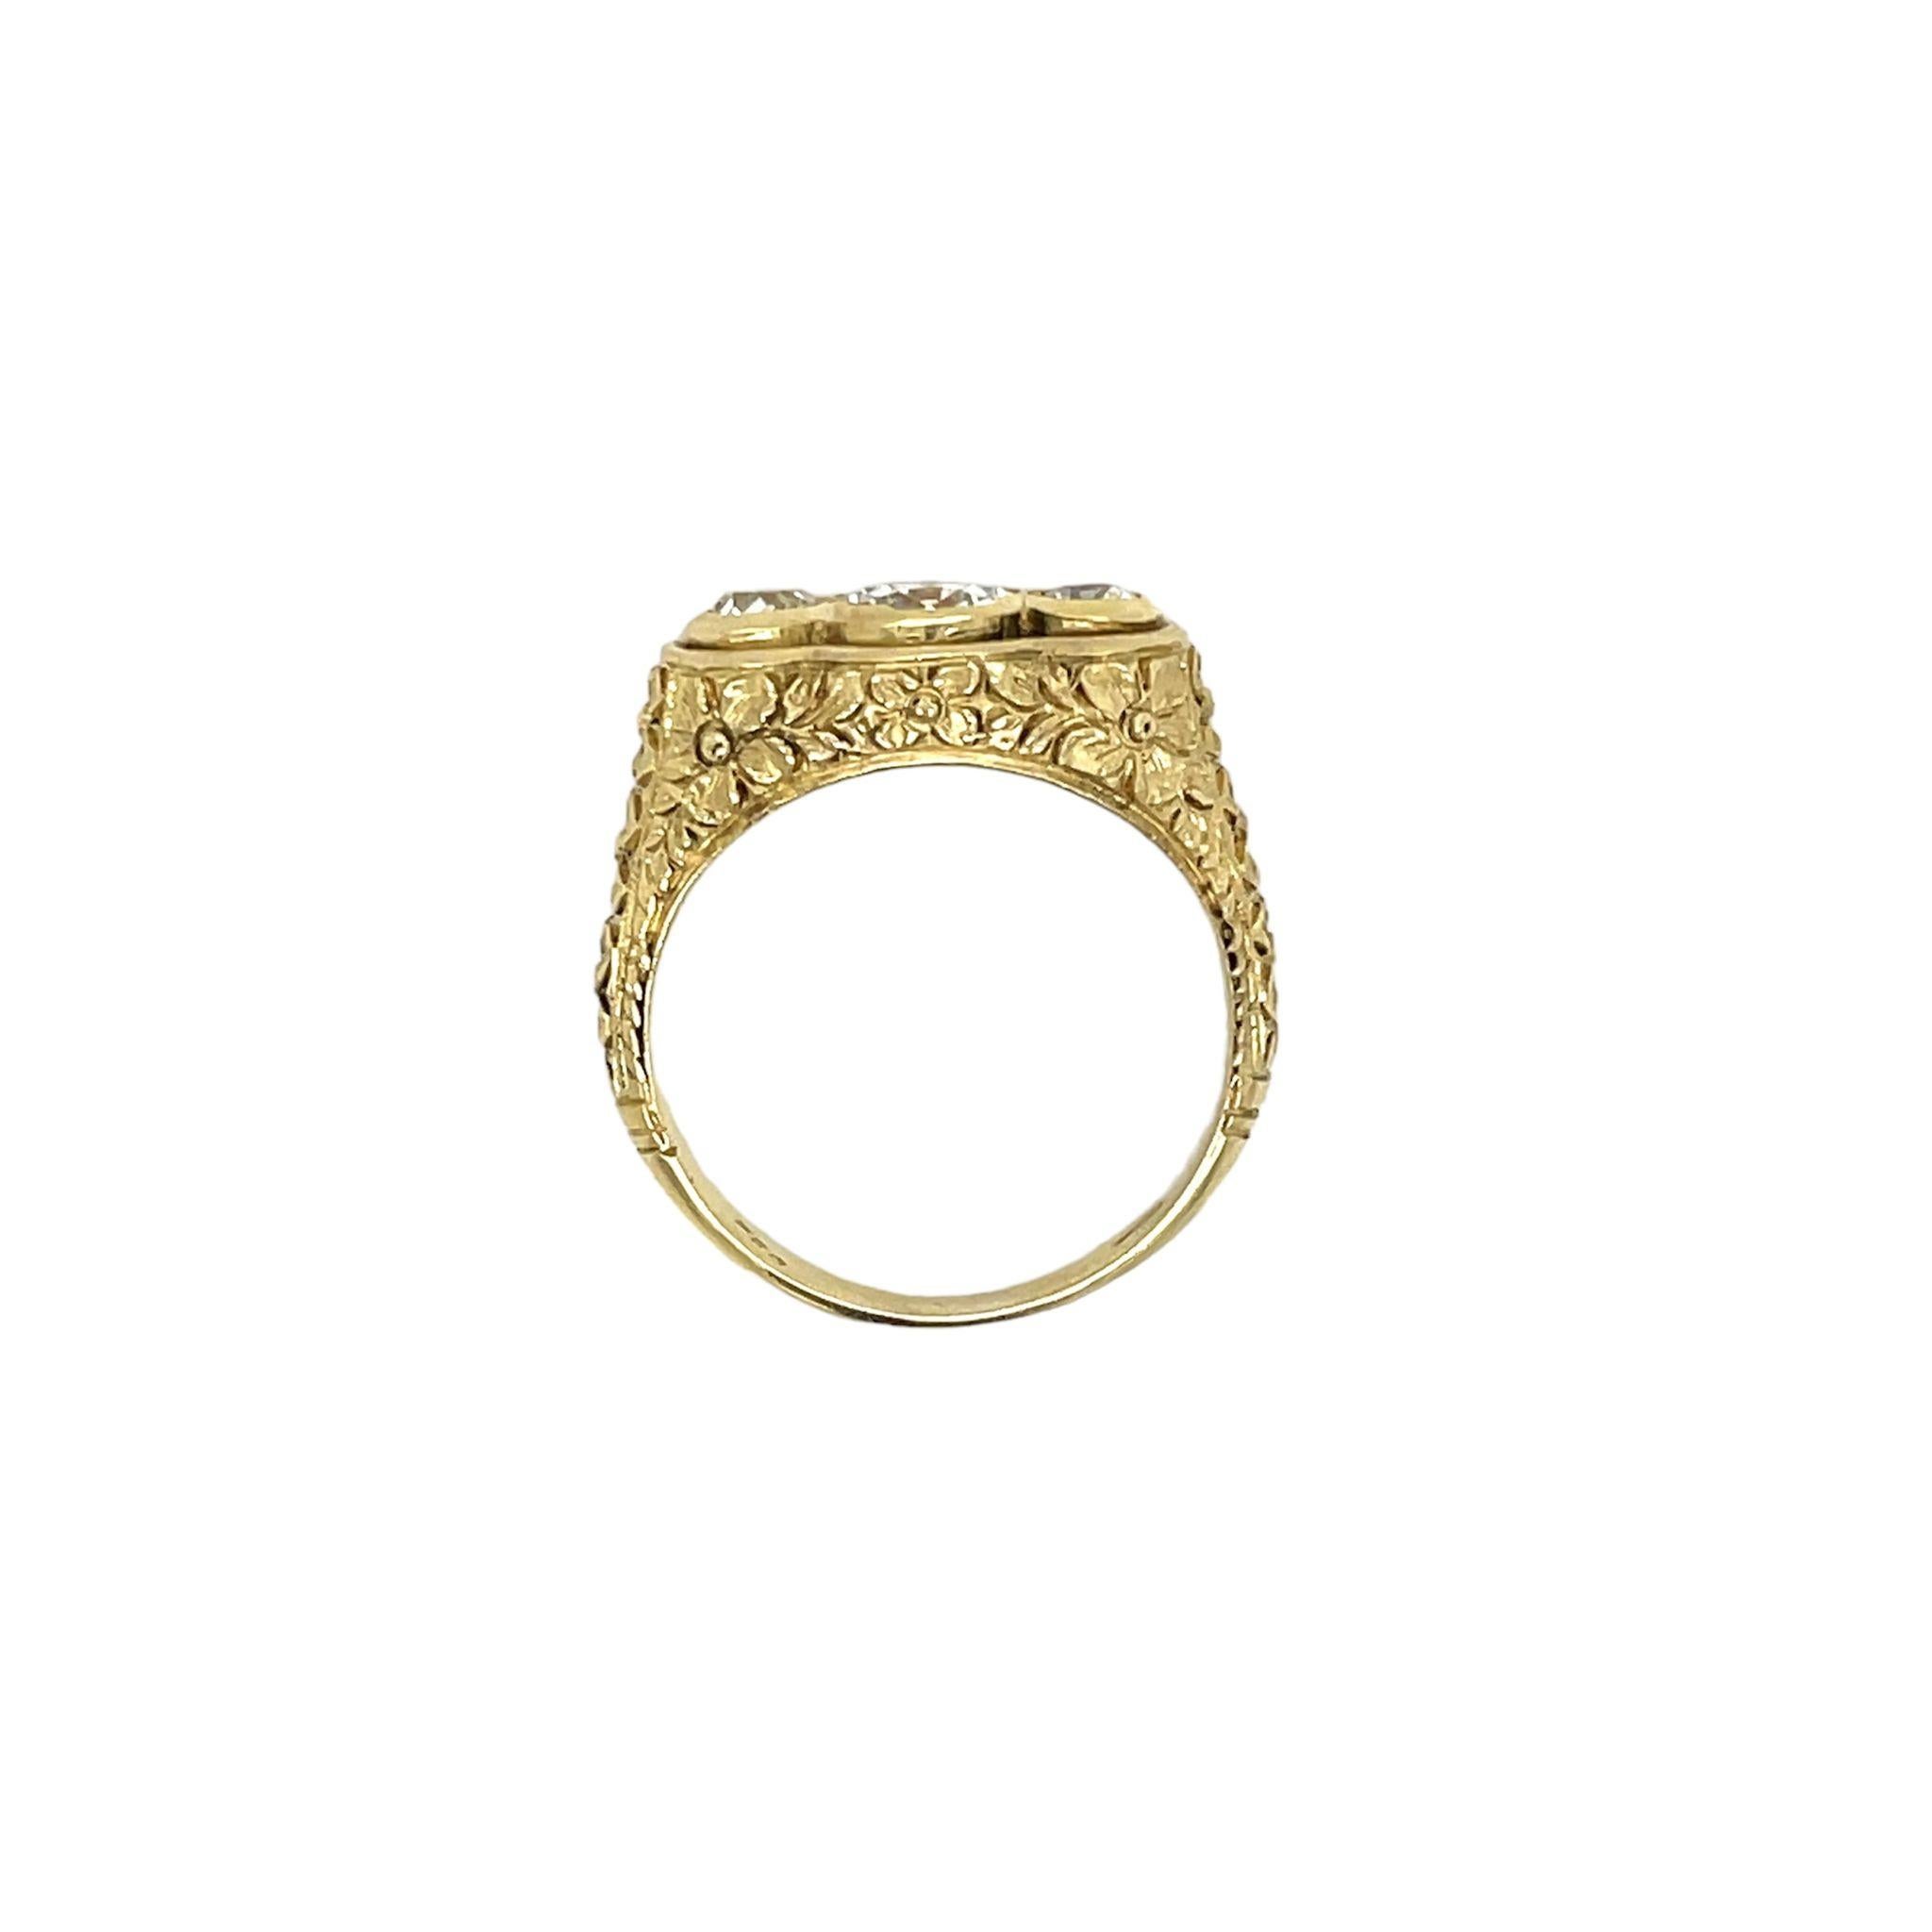 Wunderschöner Design-Ring, datiert '1900, handgefertigt in 18K Gold. Das Zentrum ist mit einem großen funkelnden Diamanten im Minenschliff verziert.  Gewicht 0,68 Karat mit der Graduierung H/I Farbe Si2 Klarheit, und an der Seite 2 kleinere